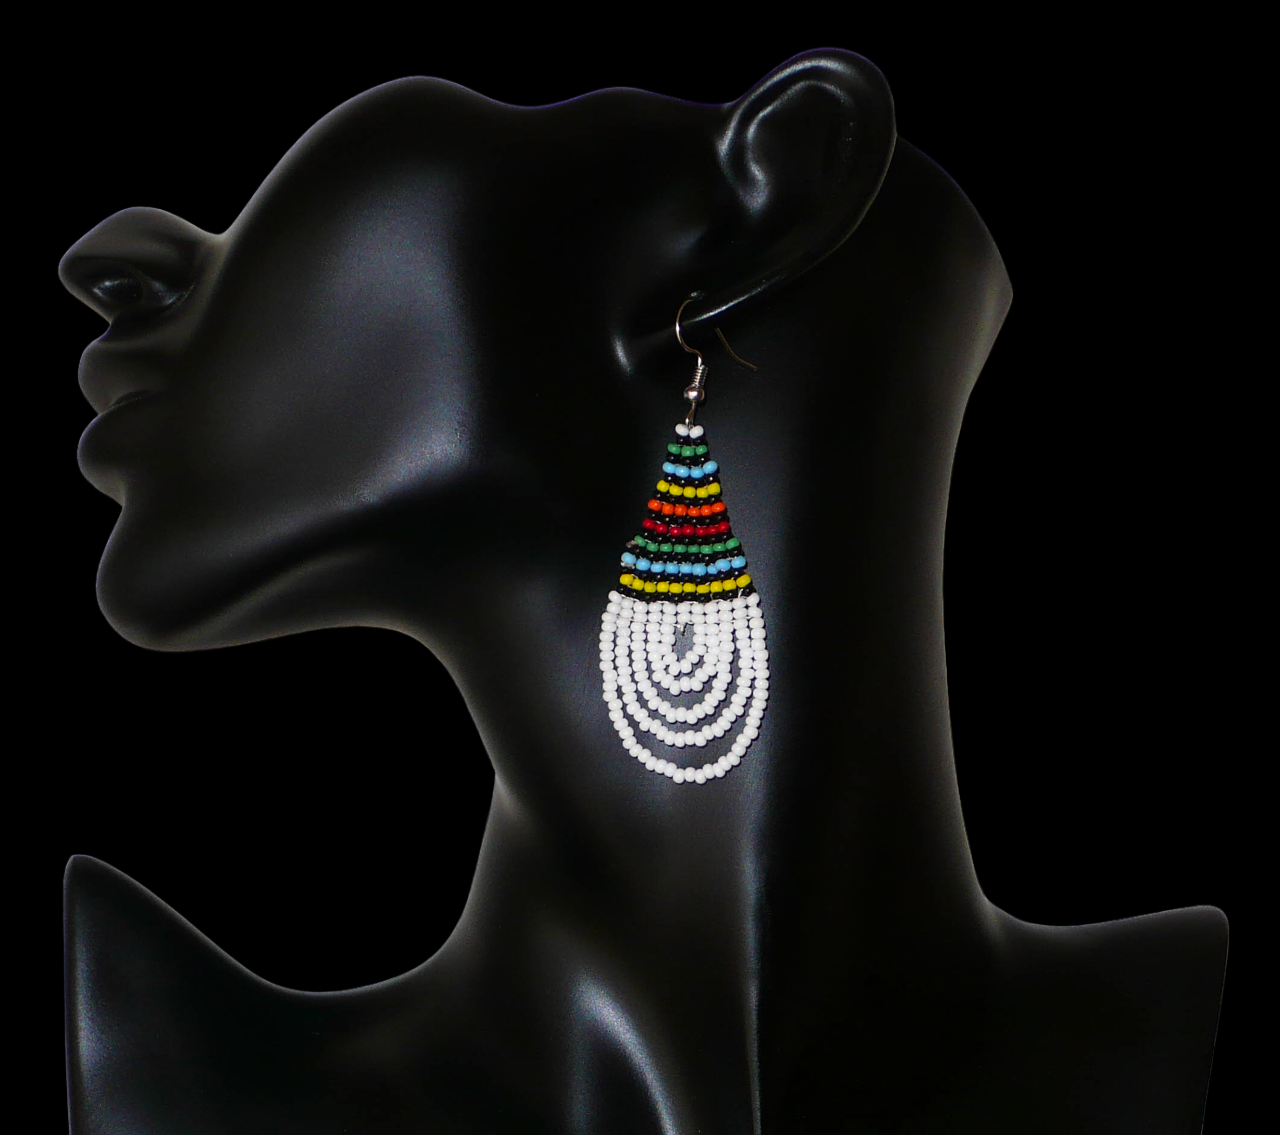 Boucles d'oreilles africaines à motifs traditionnels zoulous en forme de gouttes composées d'un tissage de perles de rocaille blanches et multicolores. Elles mesurent 7 cm de long et 2,5 cm de large et se portent sur des oreilles percées. Timeless Fineries